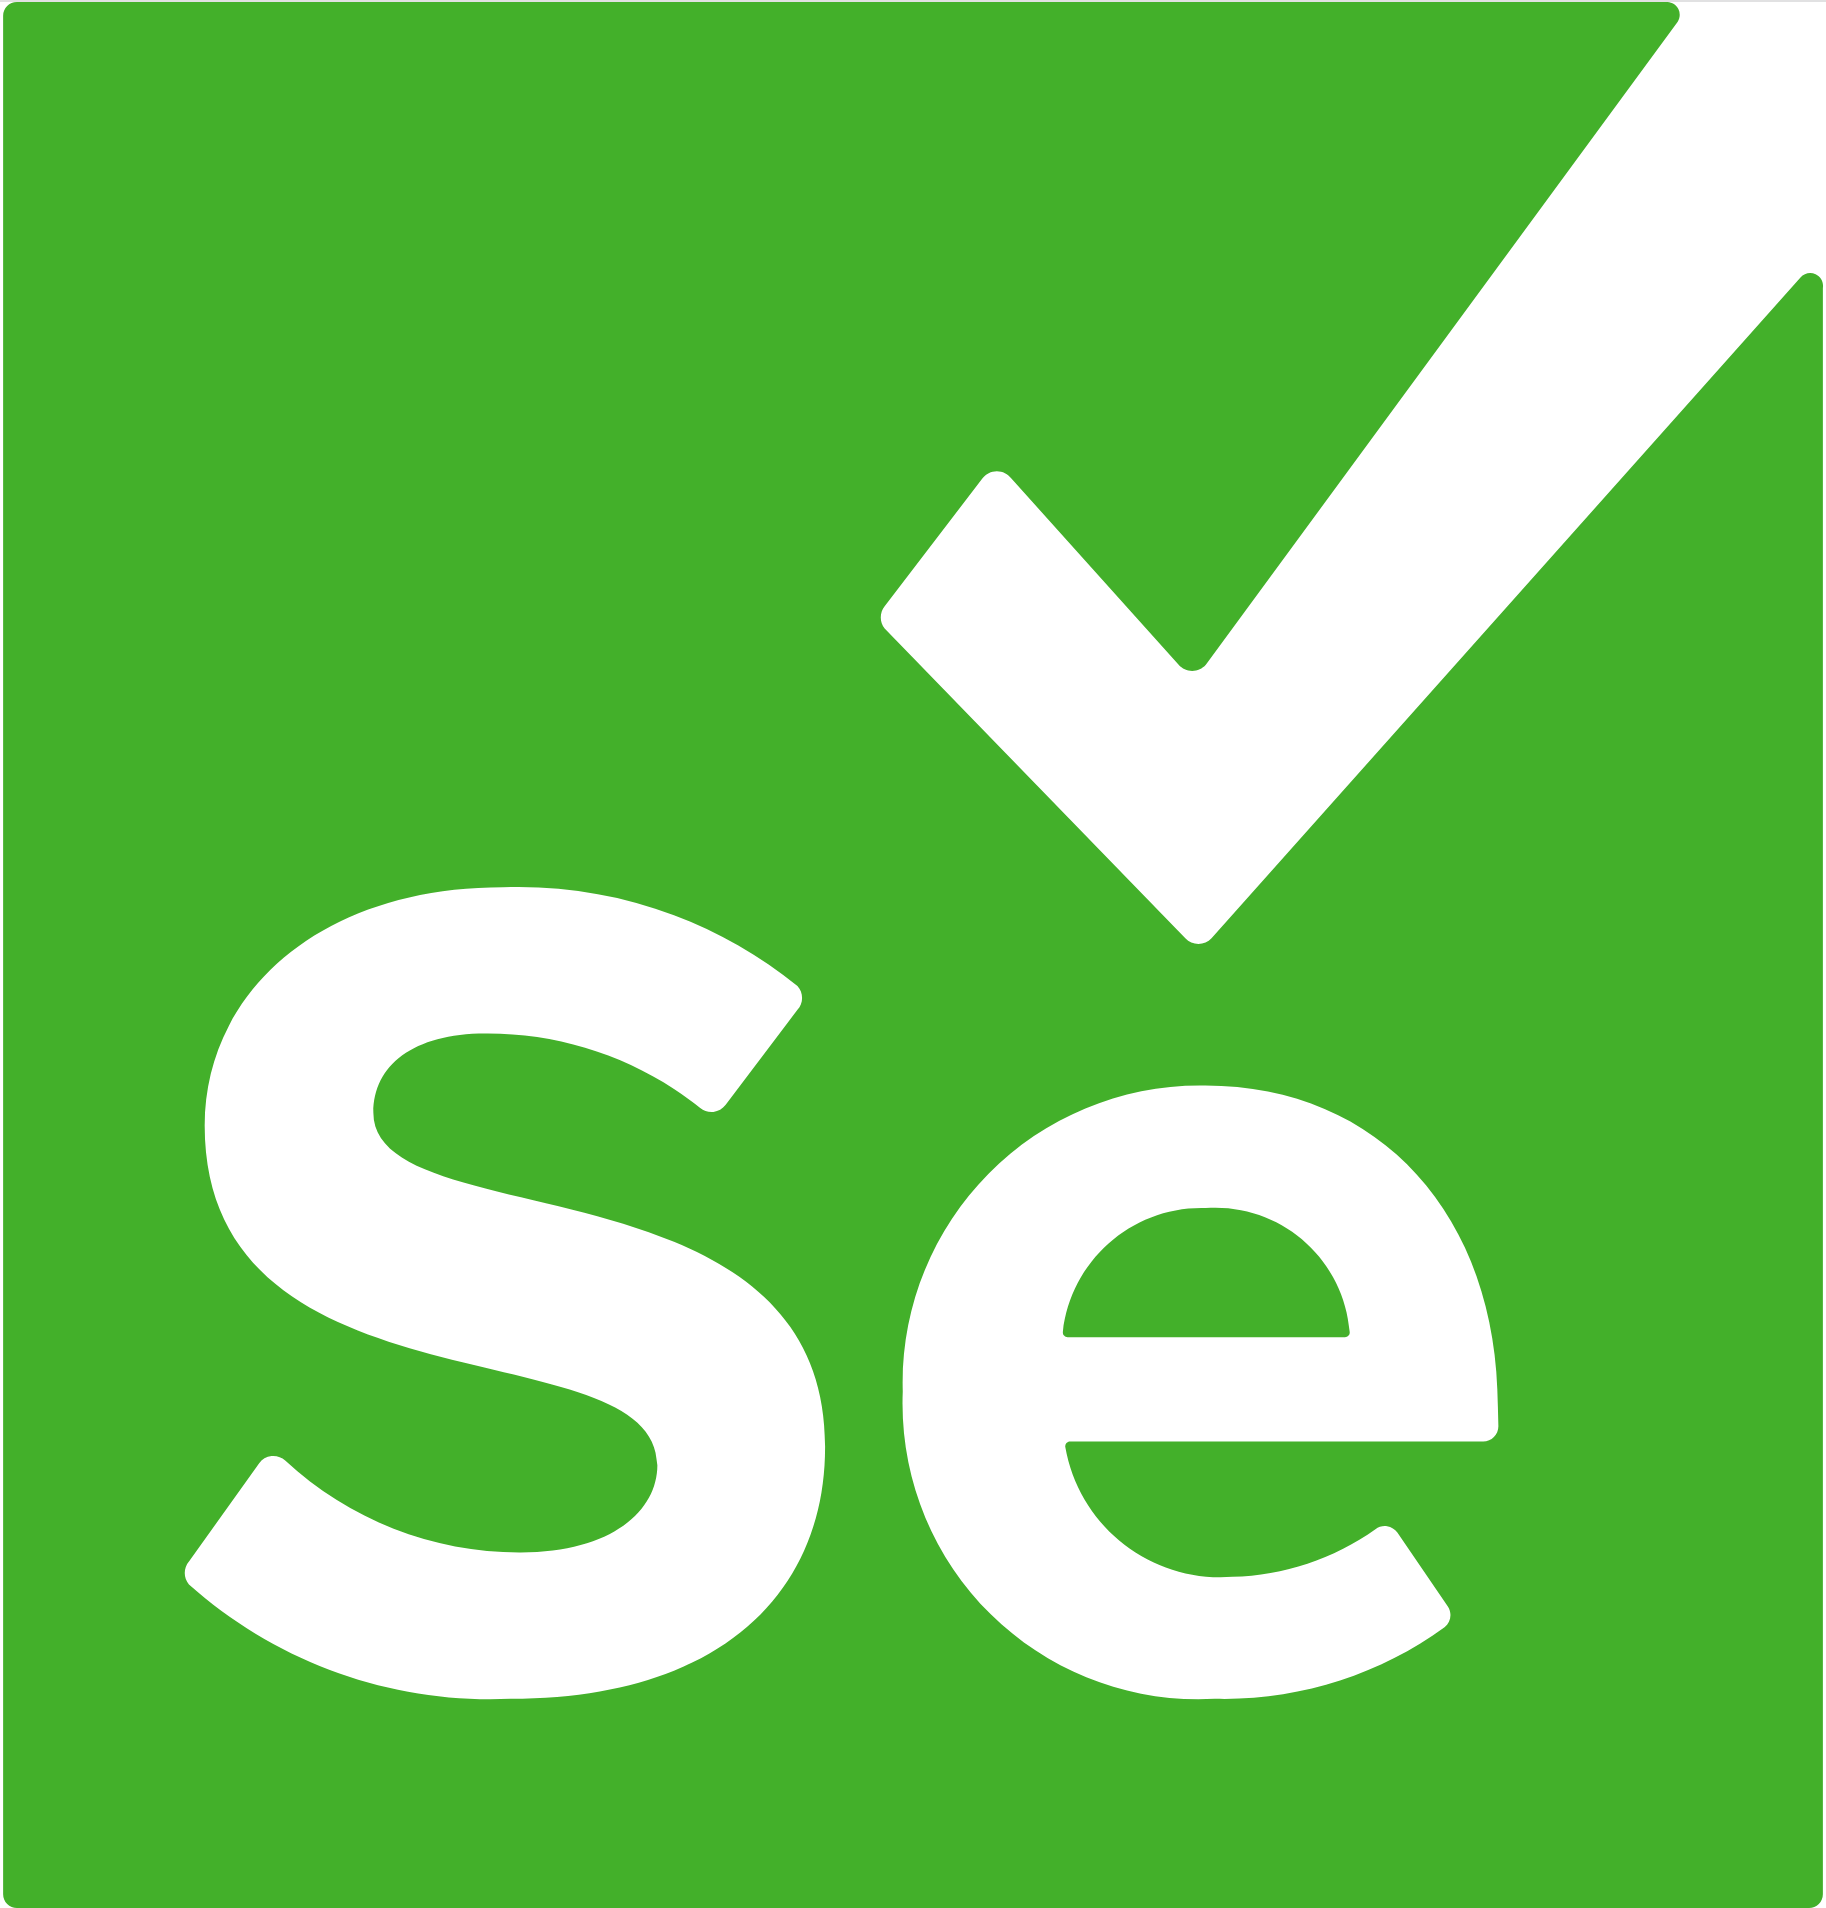 Zero-config Selenium tests